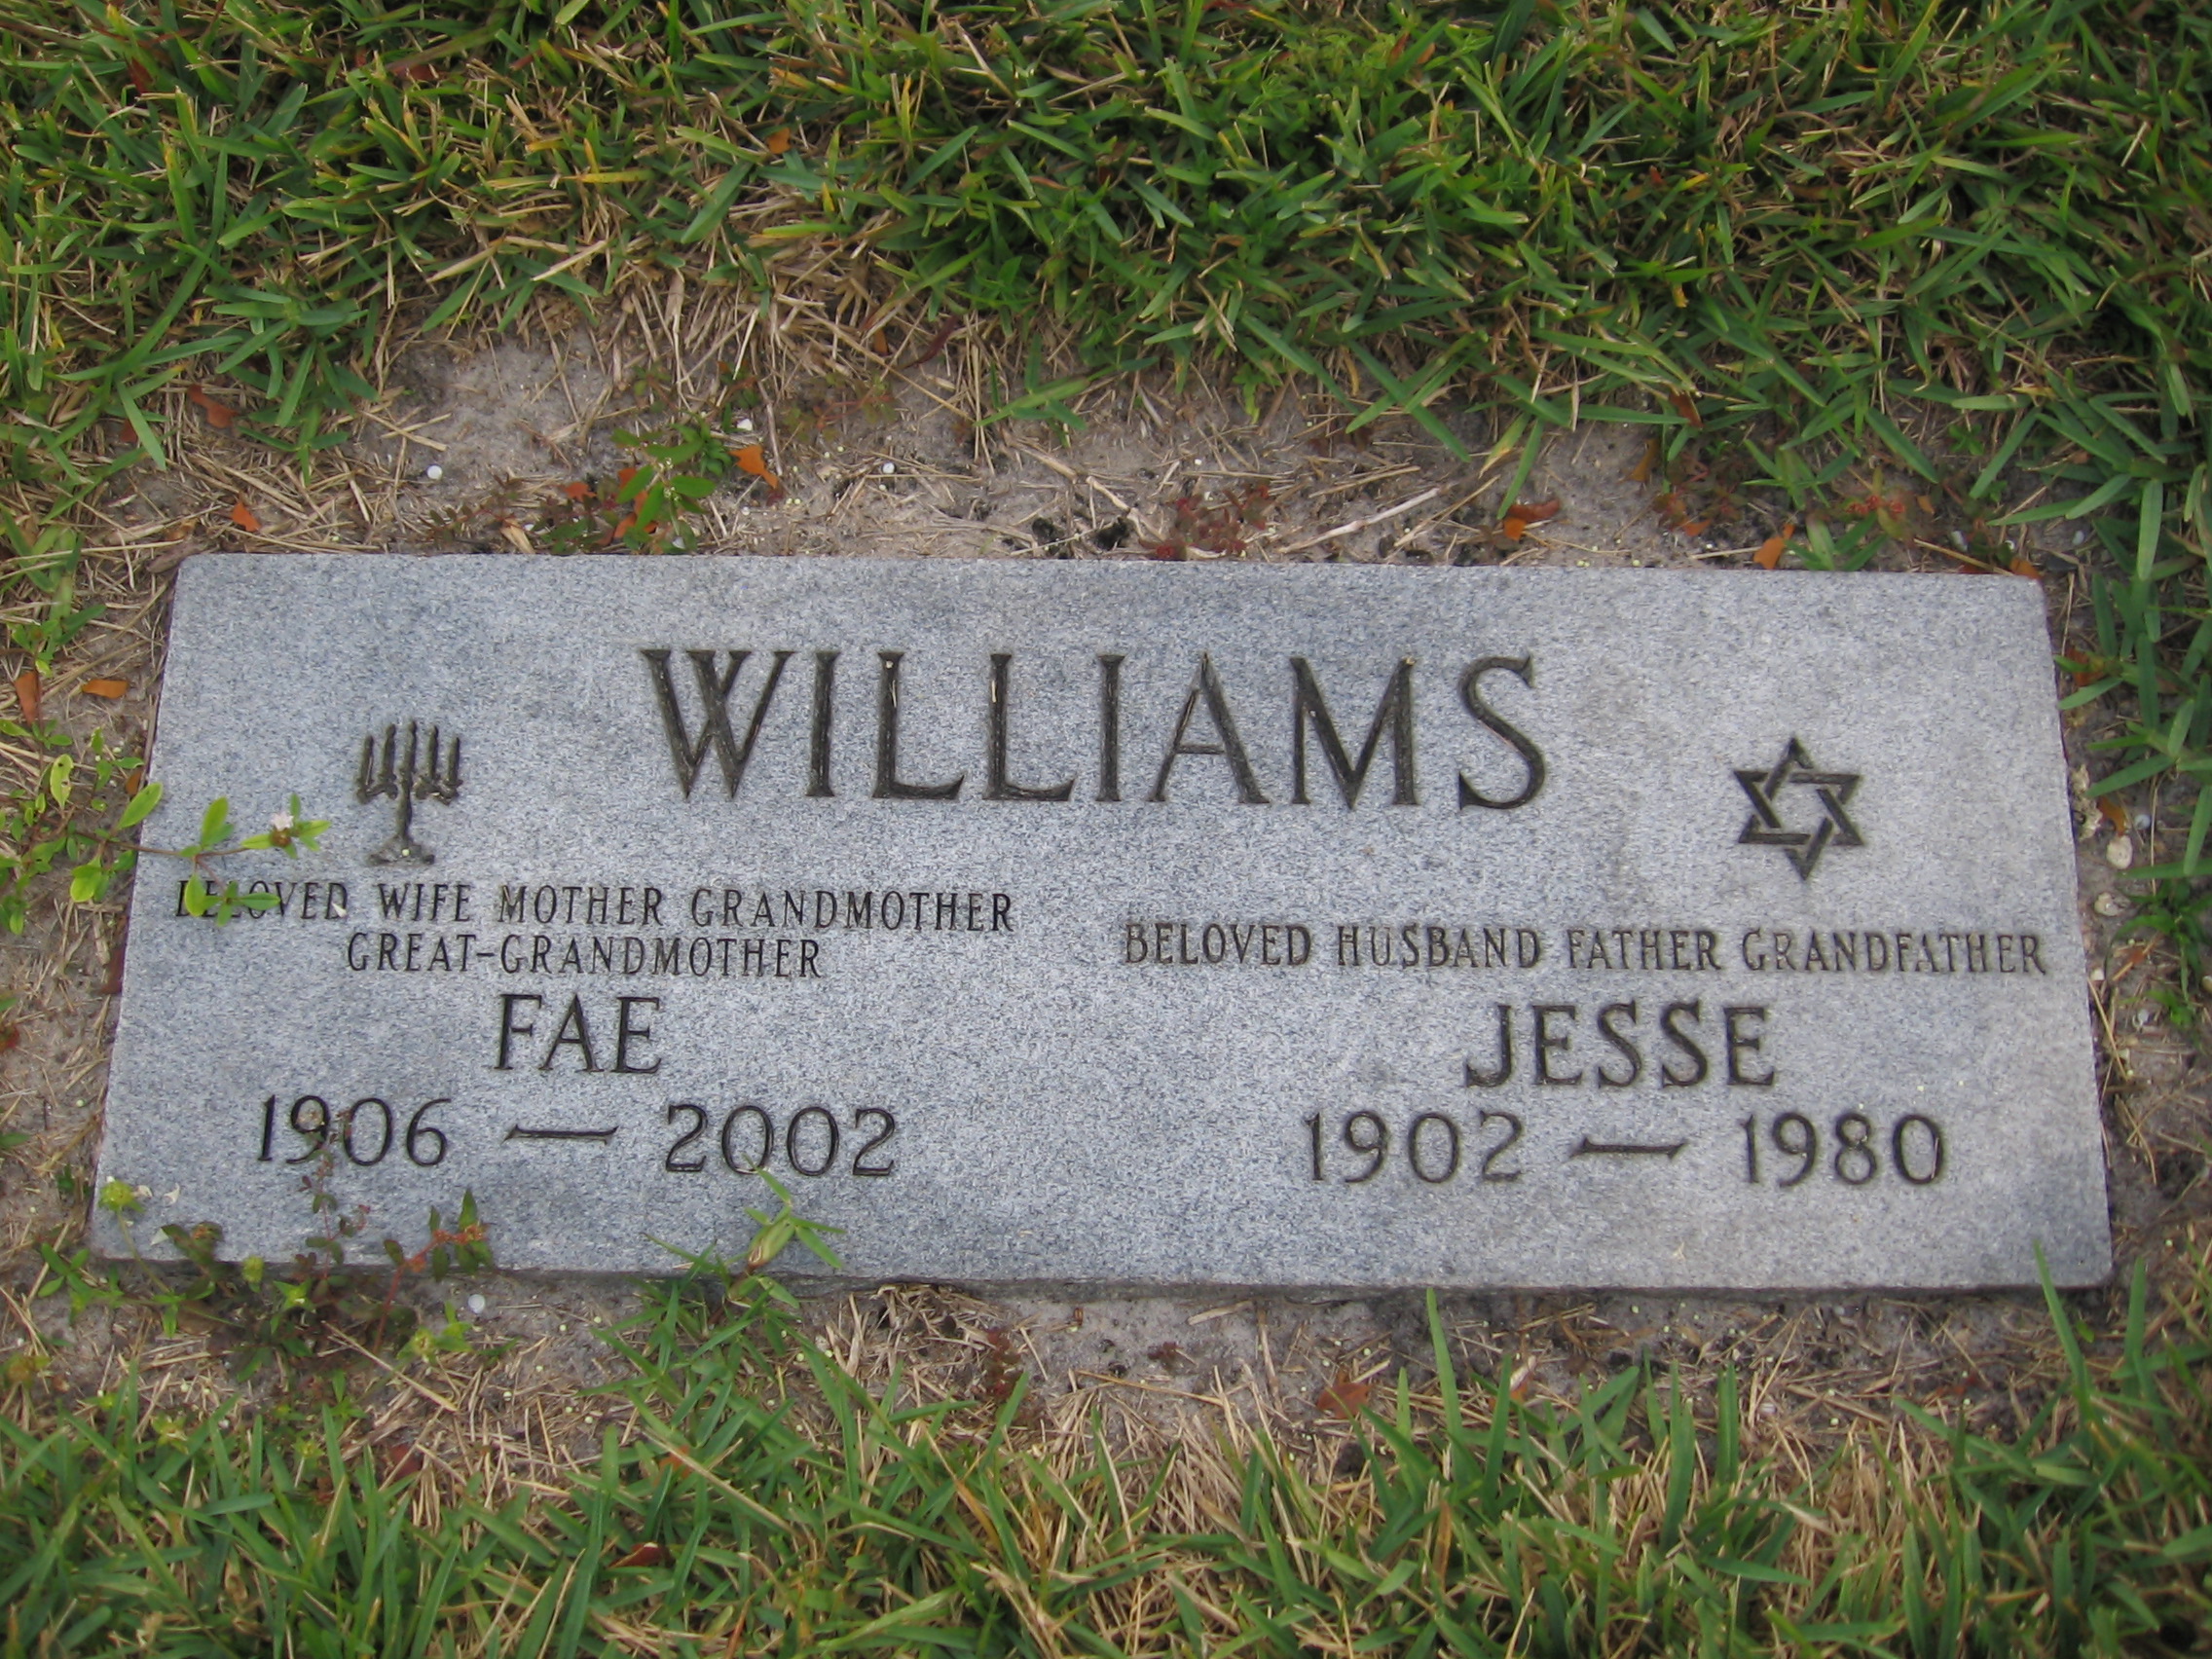 Jesse Williams